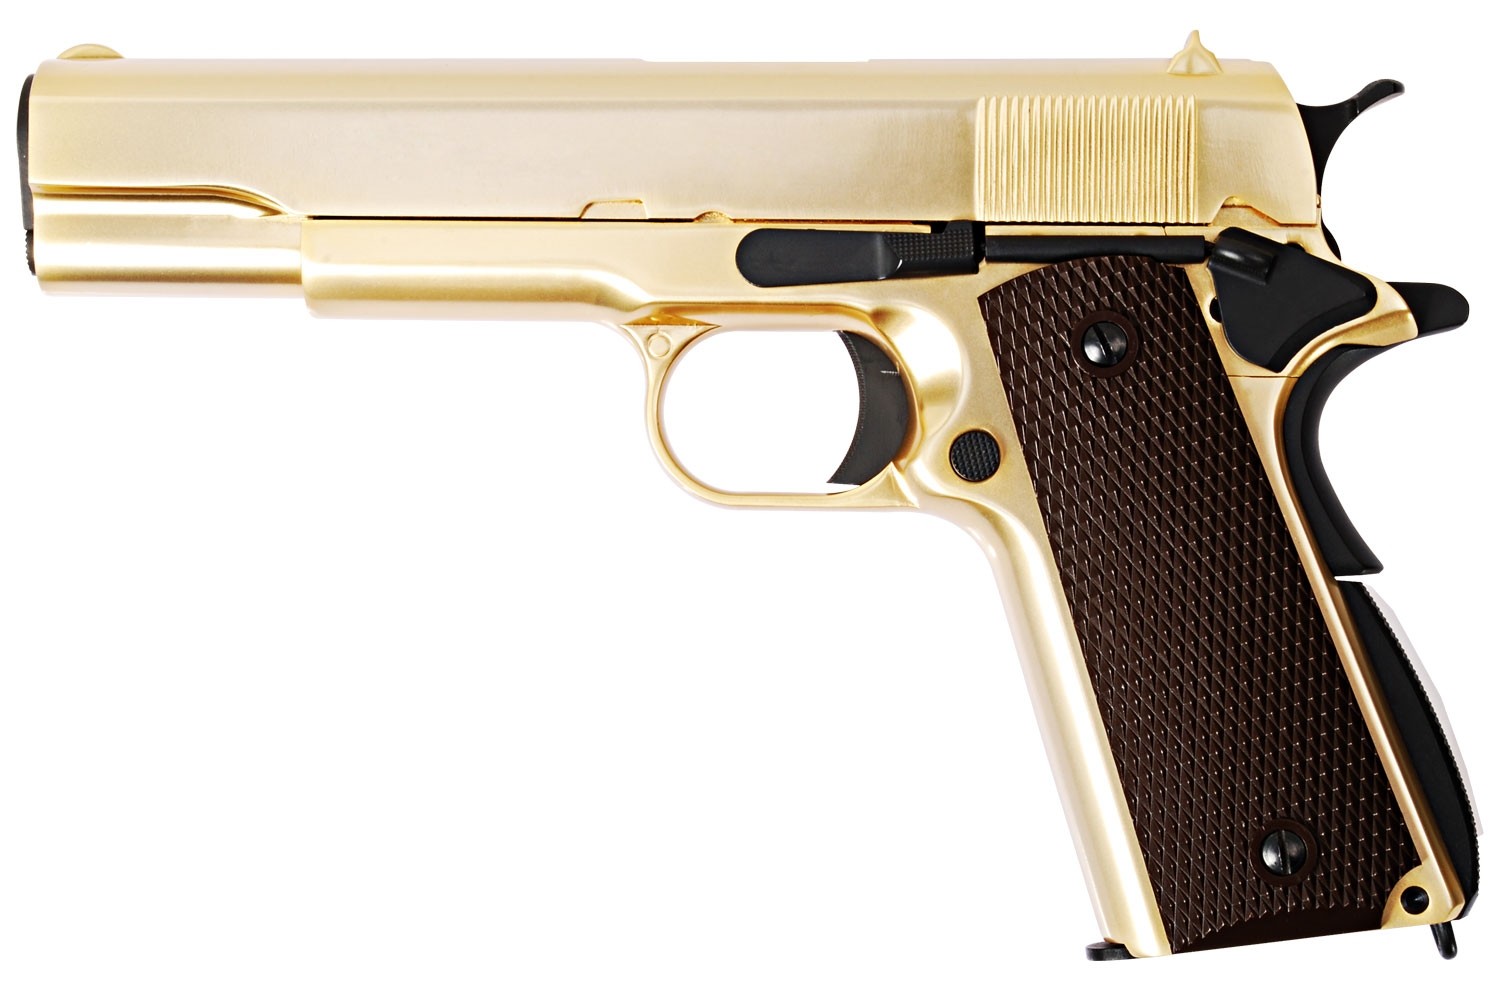 WE-E007-M1911A1 Gas Blow Back Pistol (Gold )